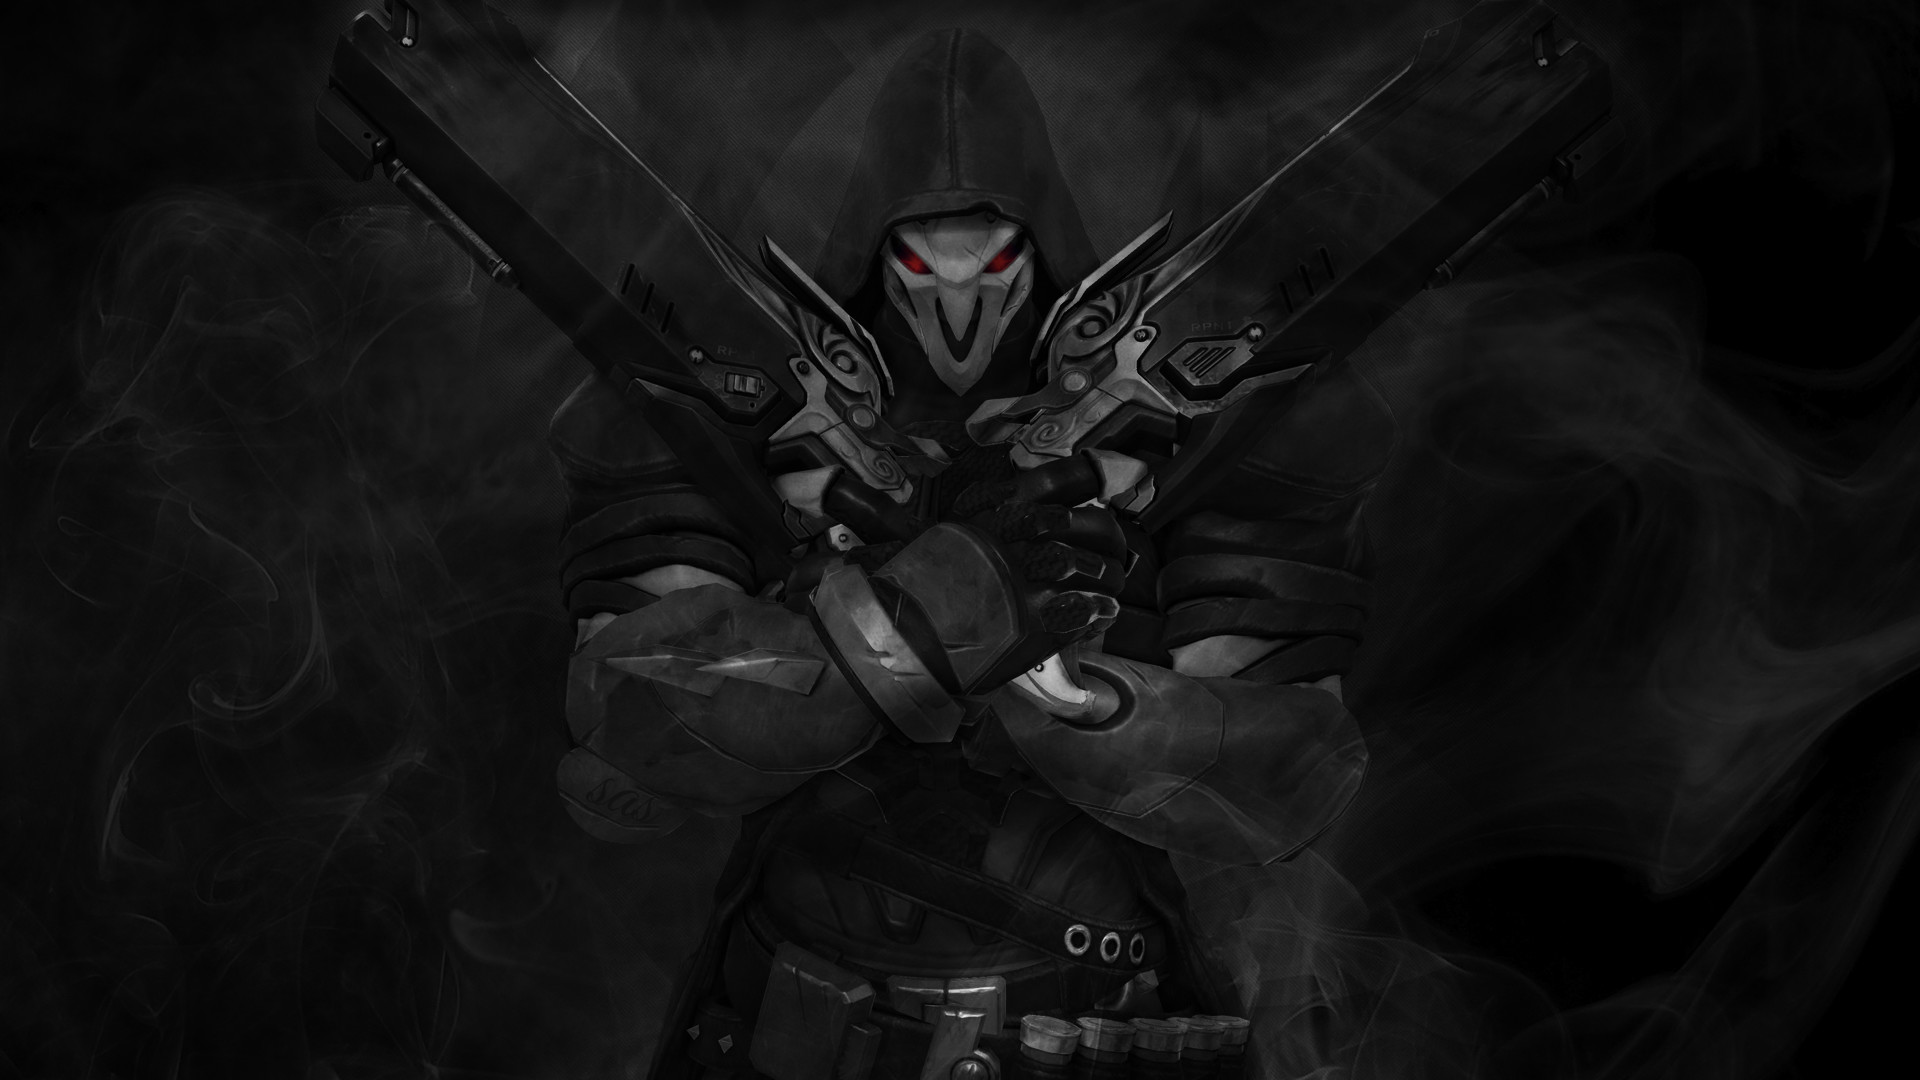 1920x1080 ... Overwatch Wallpapers and Destop Backgrounds | The Overwatcher Reaper ...